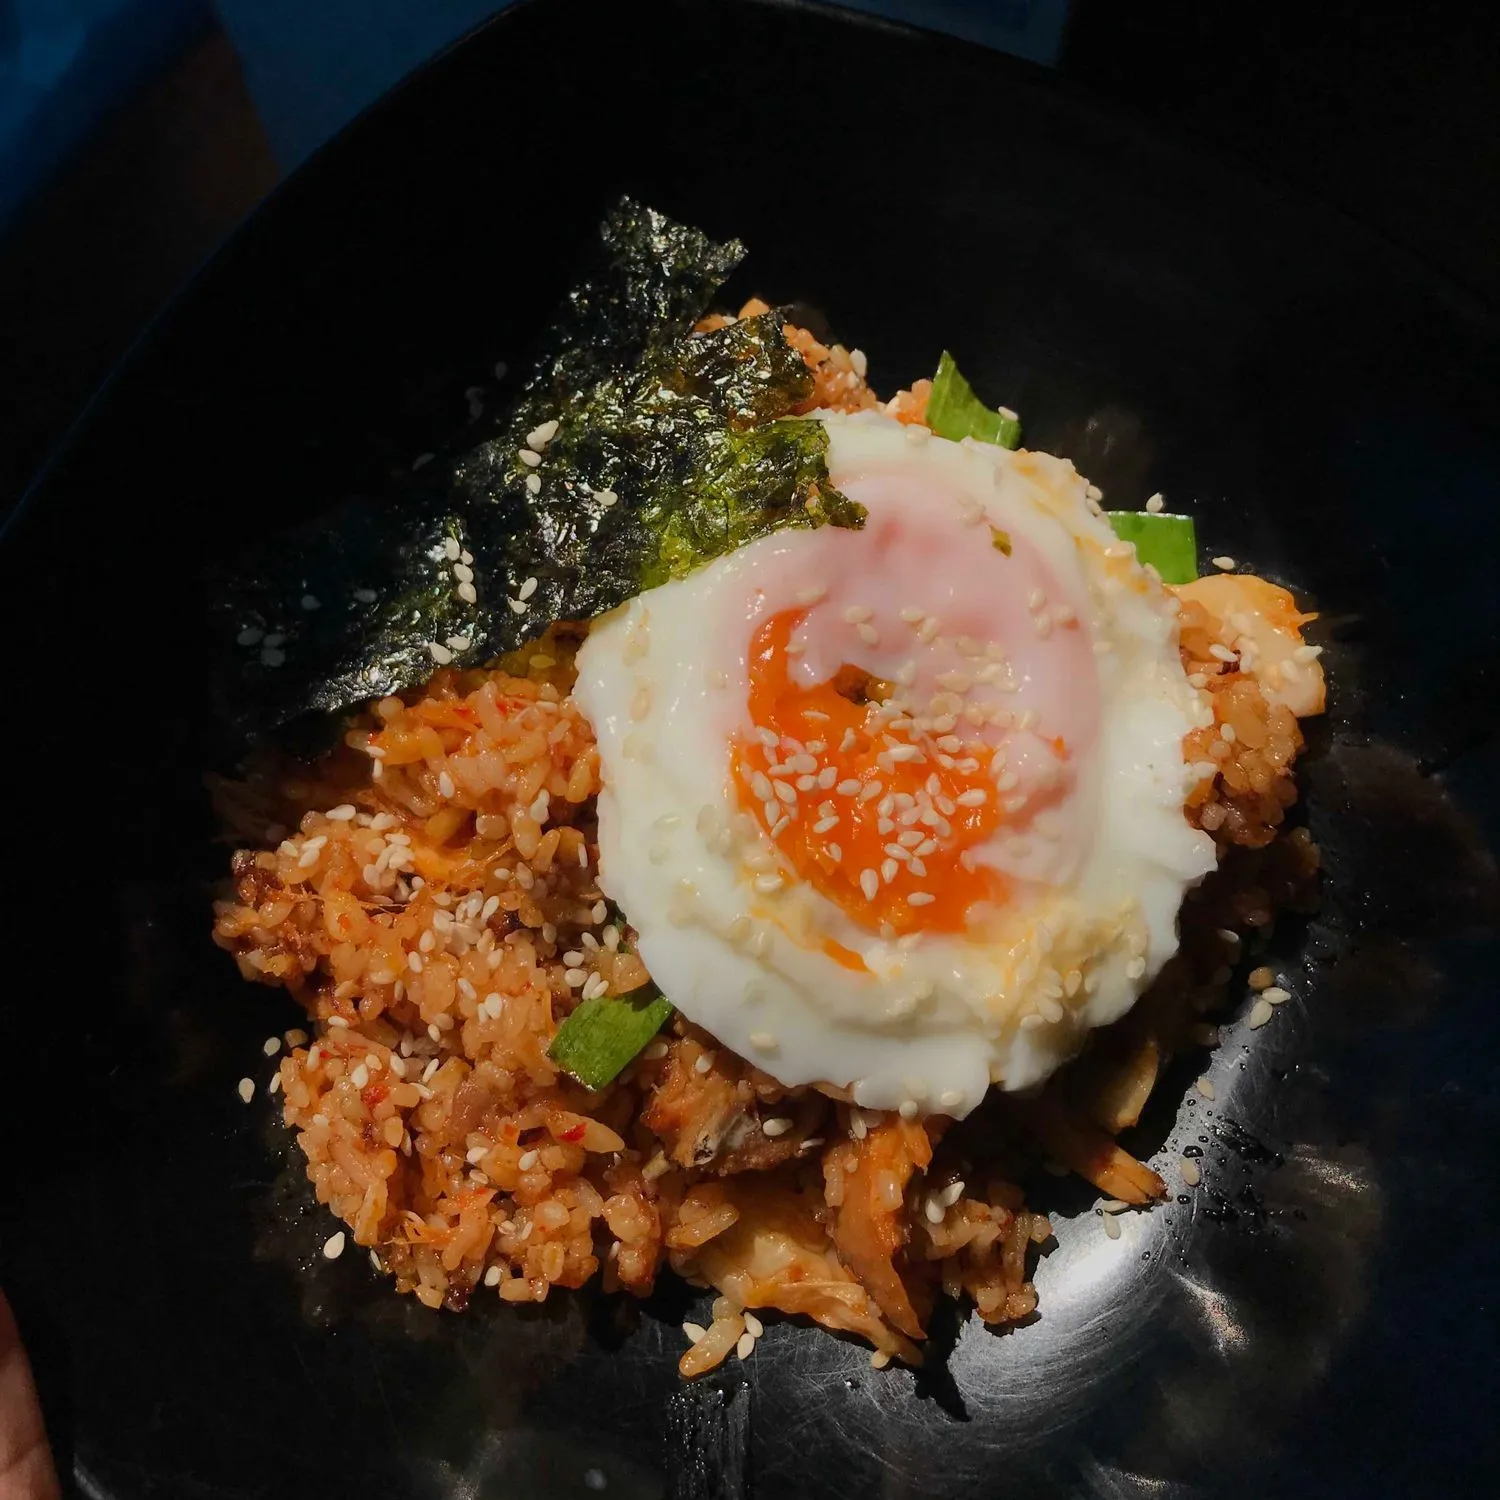 kimchi fried rice with nori #JagoMasakMinggu4Periode2